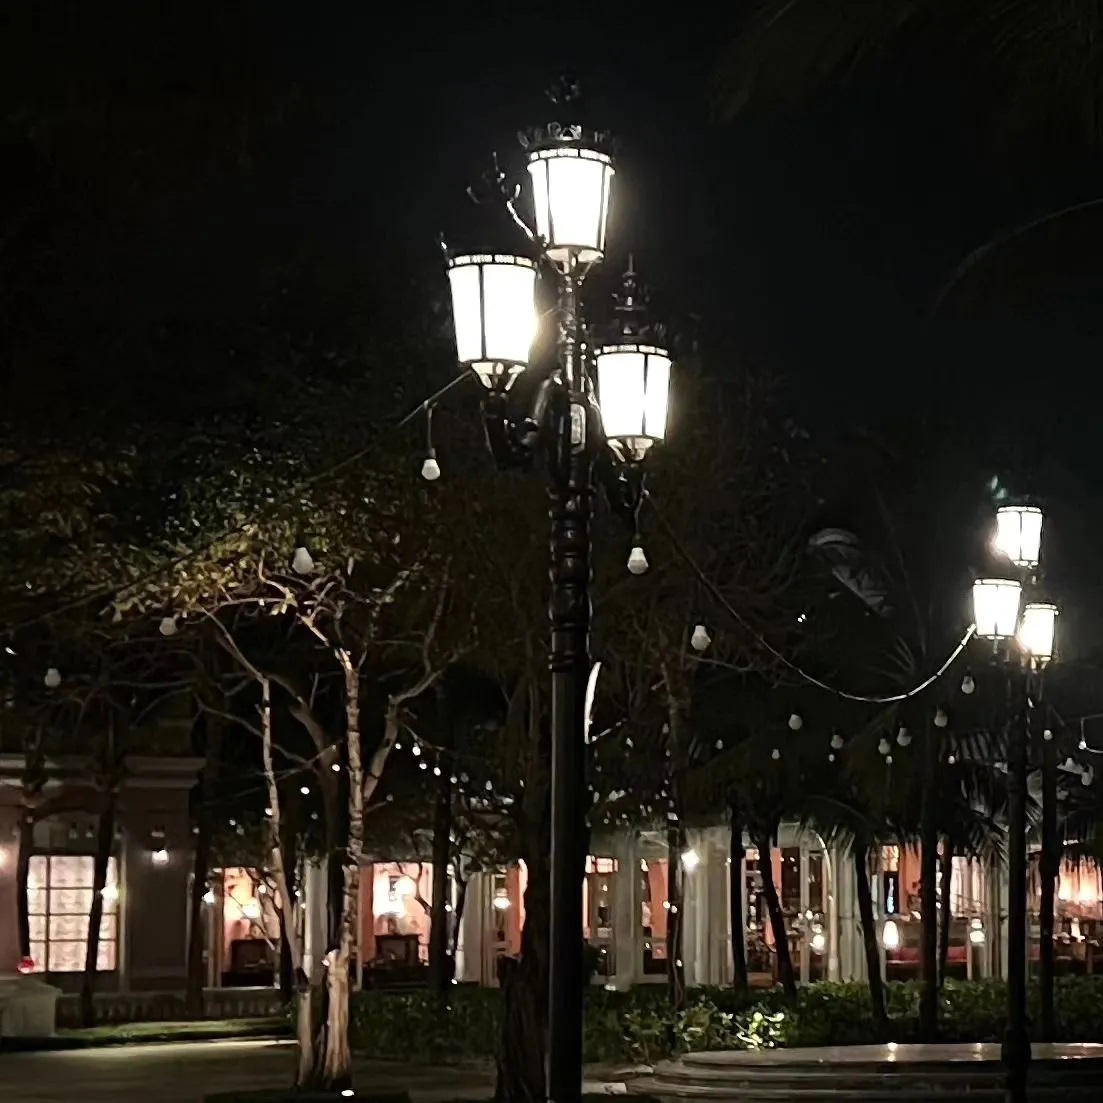 Khung cảnh Phú Quốc về đêm qua ống kính UEE.